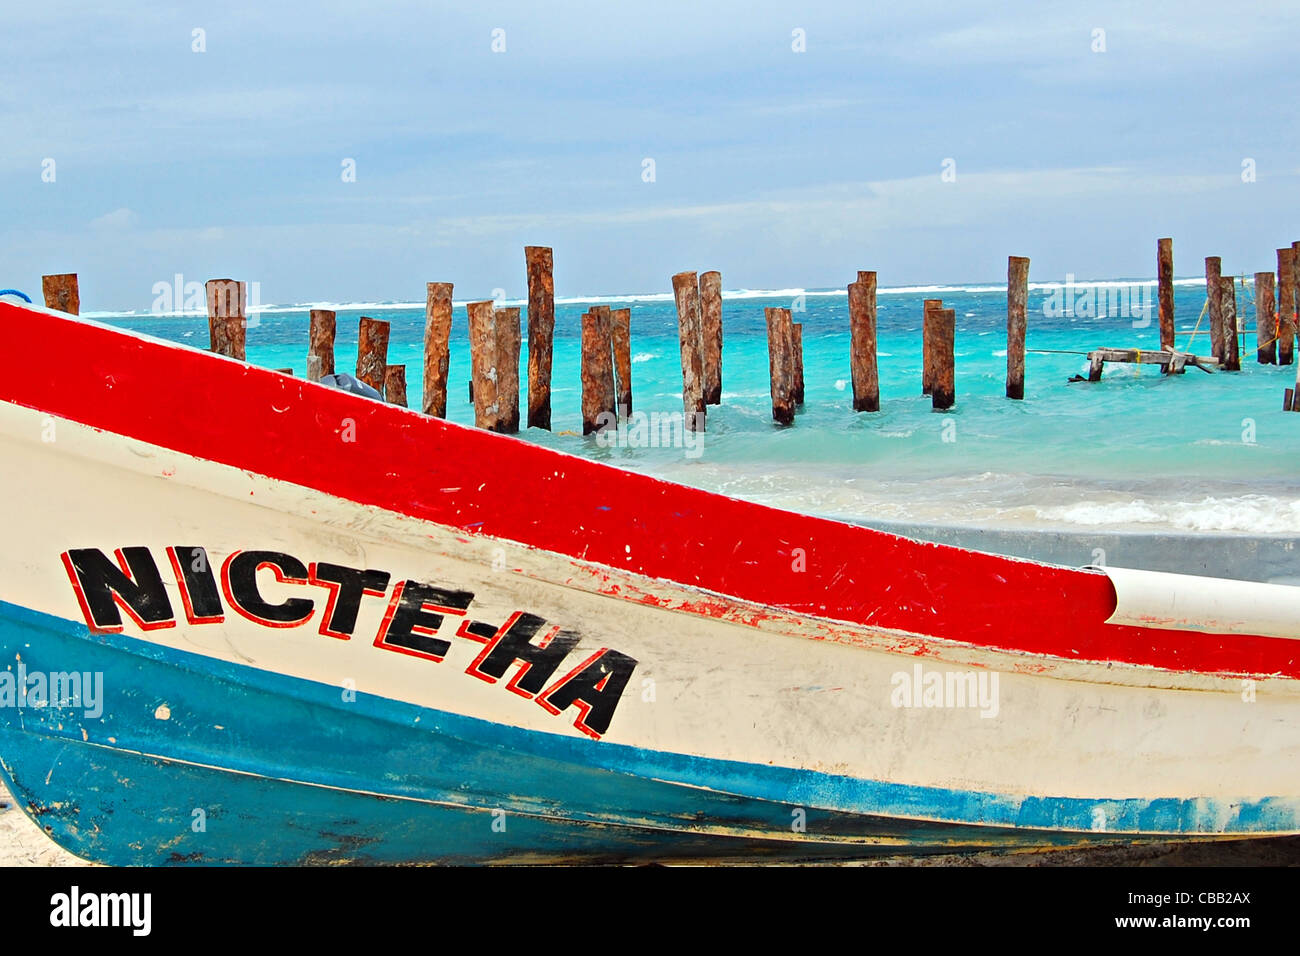 Boat, Puerto Morelos, Mexico Stock Photo